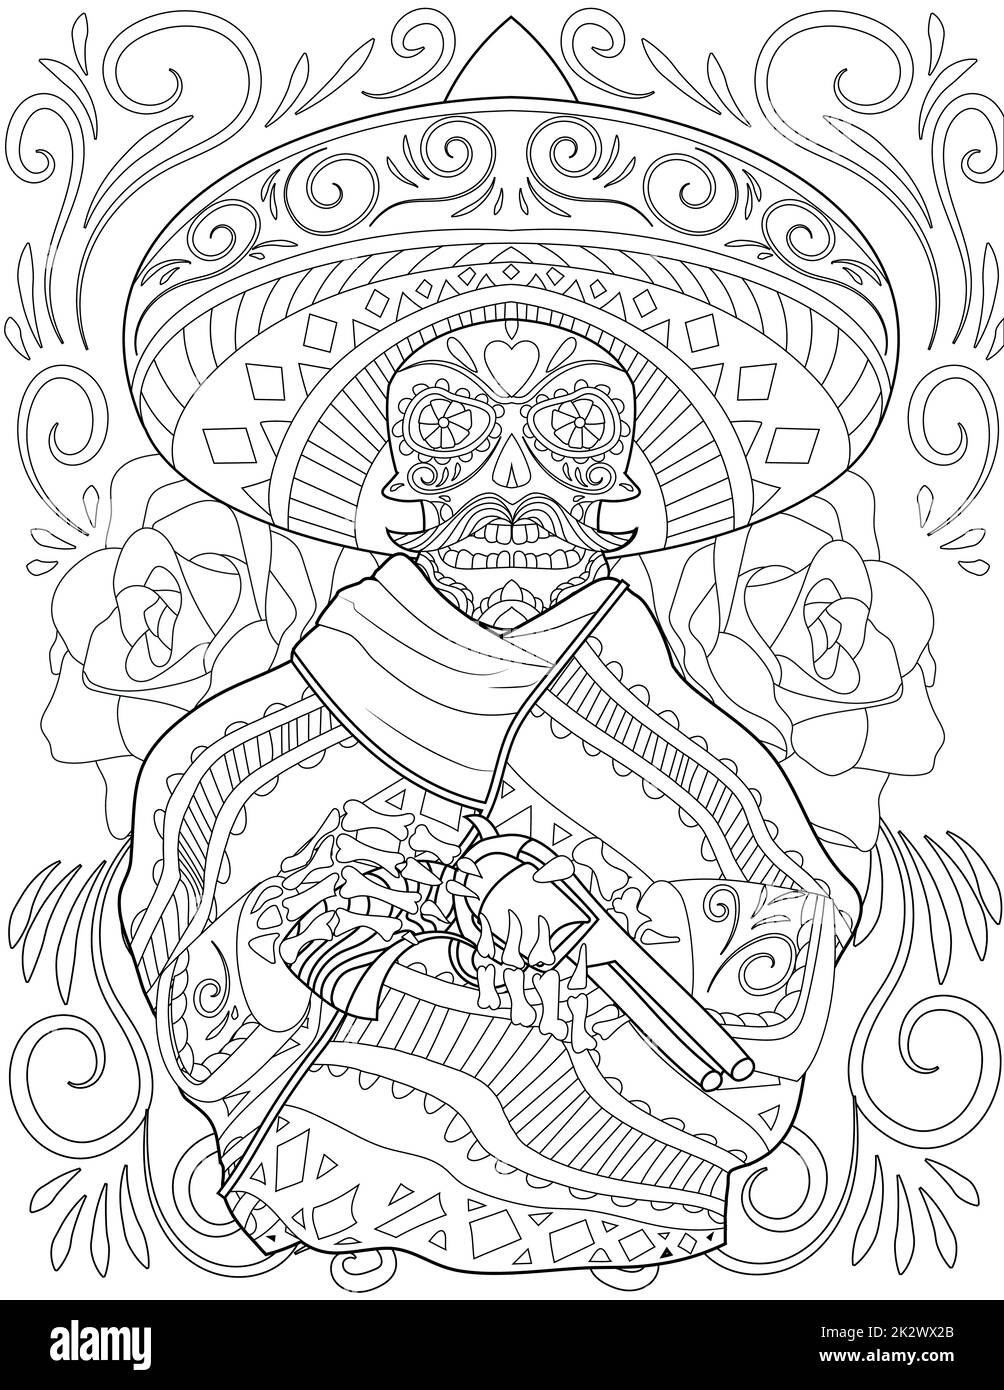 Crâne Mariachi dessin tenant pistolet portant Big Hat entouré de belles Roses. Creepy Mexican Man Line Drawing possède Un bras de feu avec une grande robe de tête. Banque D'Images